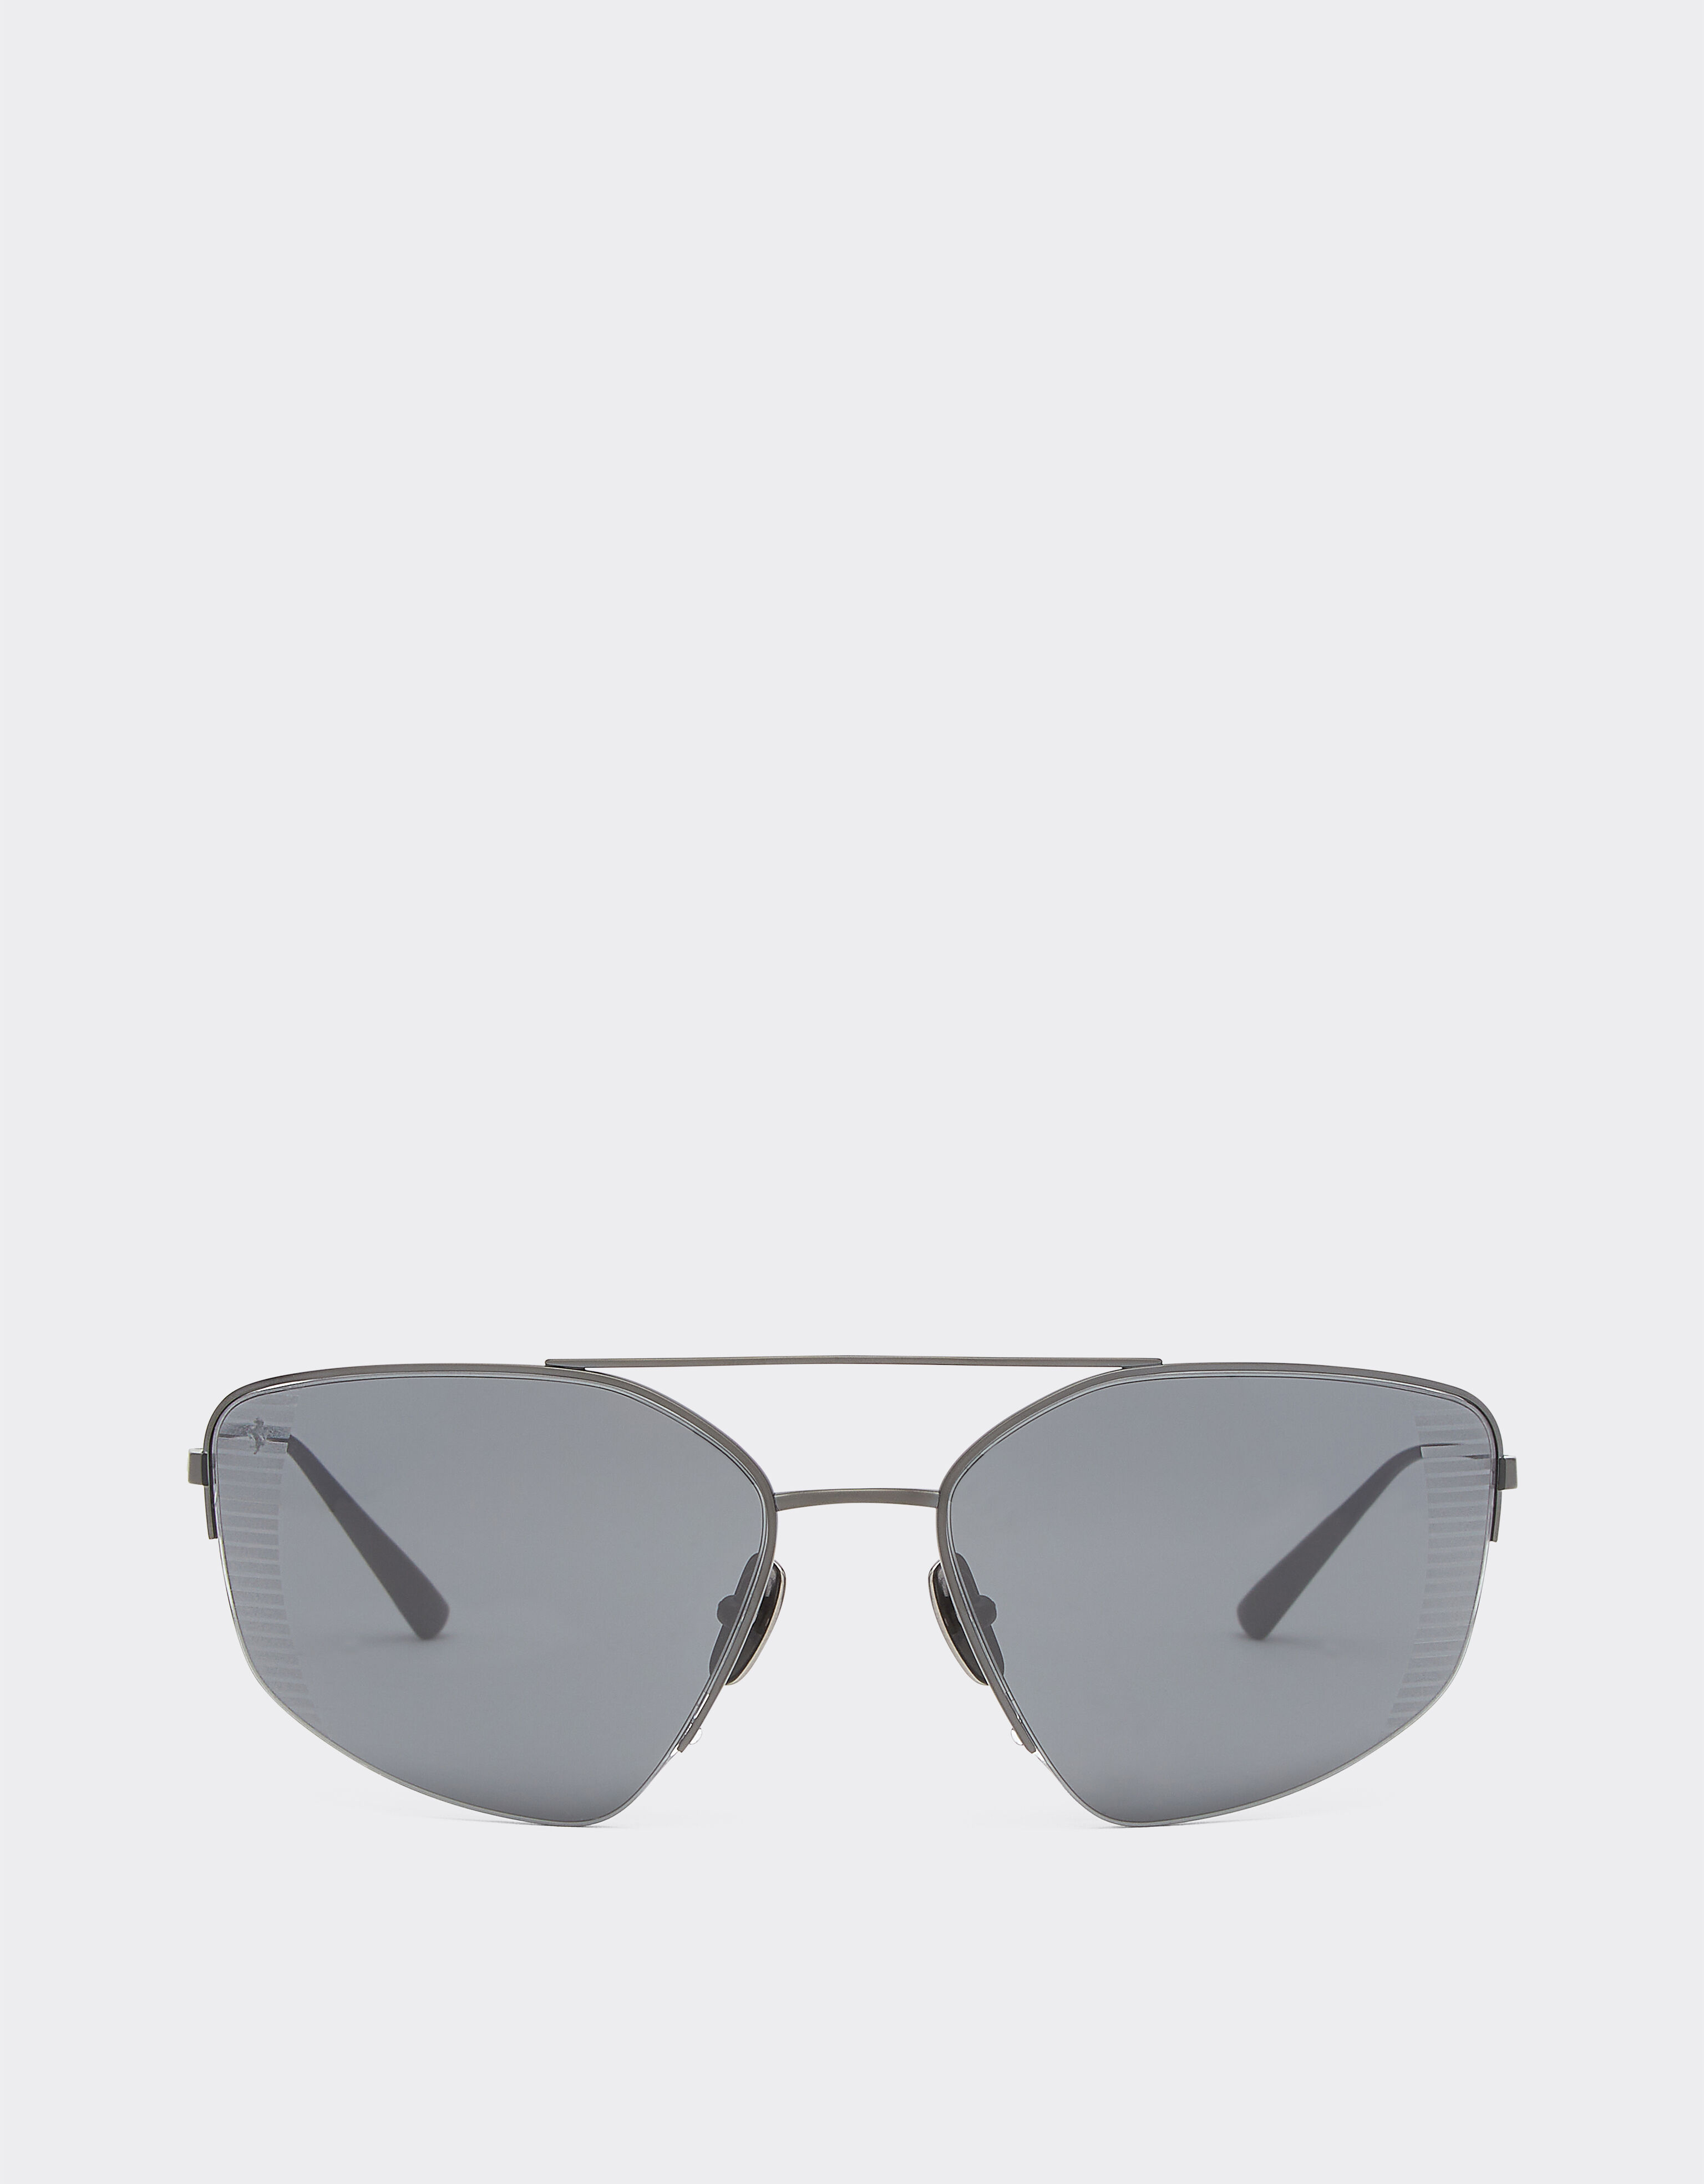 Ferrari Ferrari sunglasses in black titanium with grey polarised lenses Black F1201f